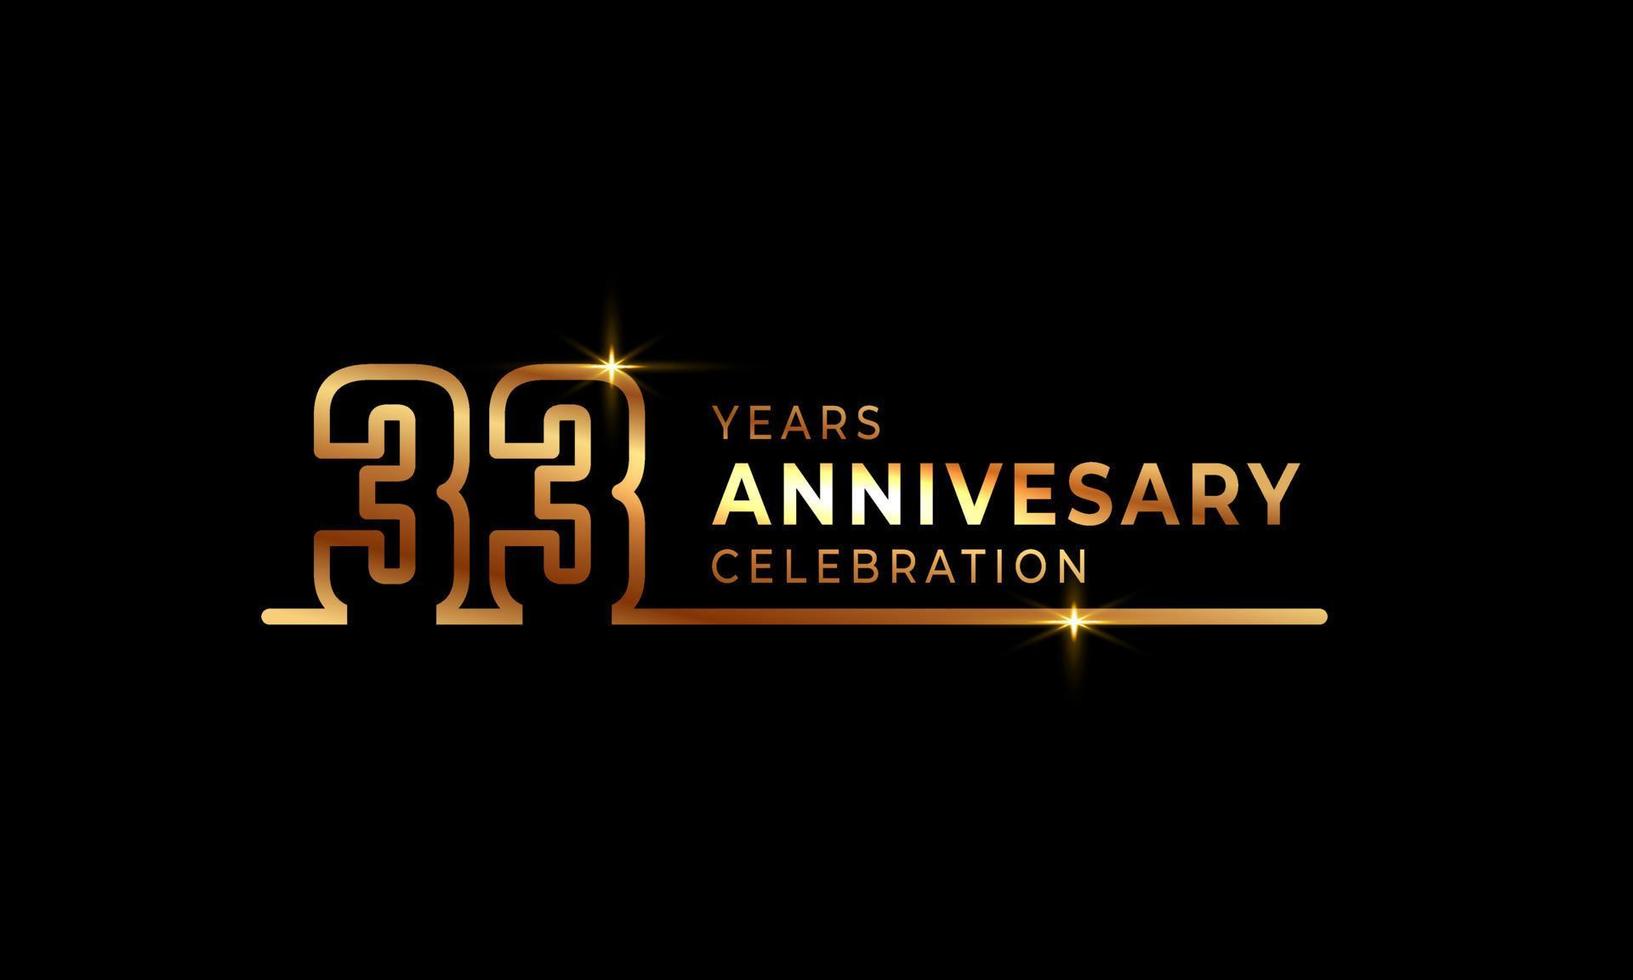 33-jarig jubileumviering logo met gouden gekleurde lettertypenummers gemaakt van één verbonden lijn voor feestgebeurtenis, bruiloft, wenskaart en uitnodiging geïsoleerd op donkere achtergrond vector